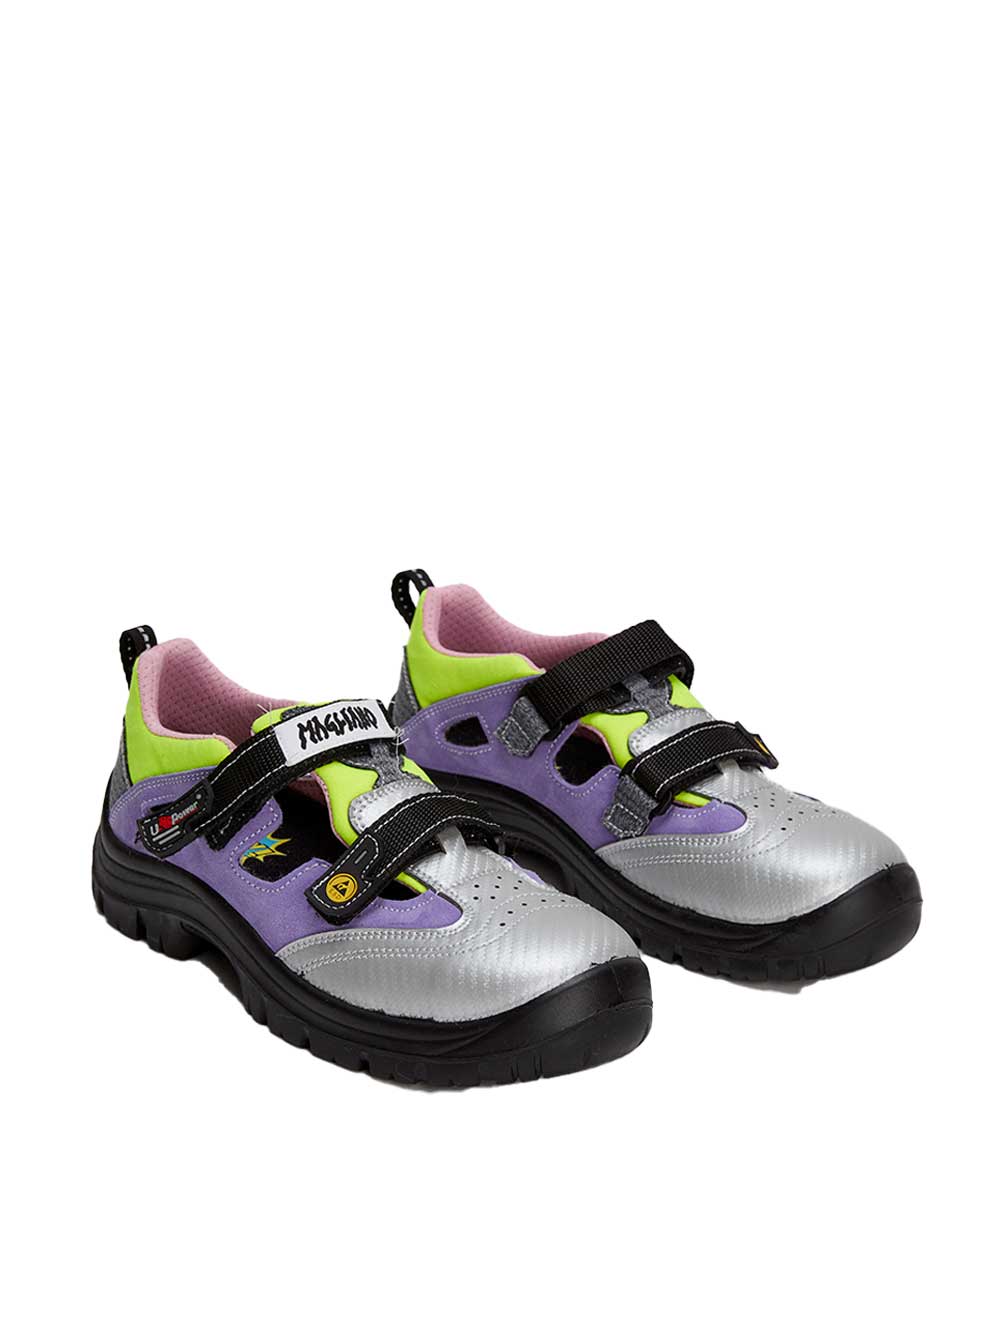 Power Scandy Purple Shoe